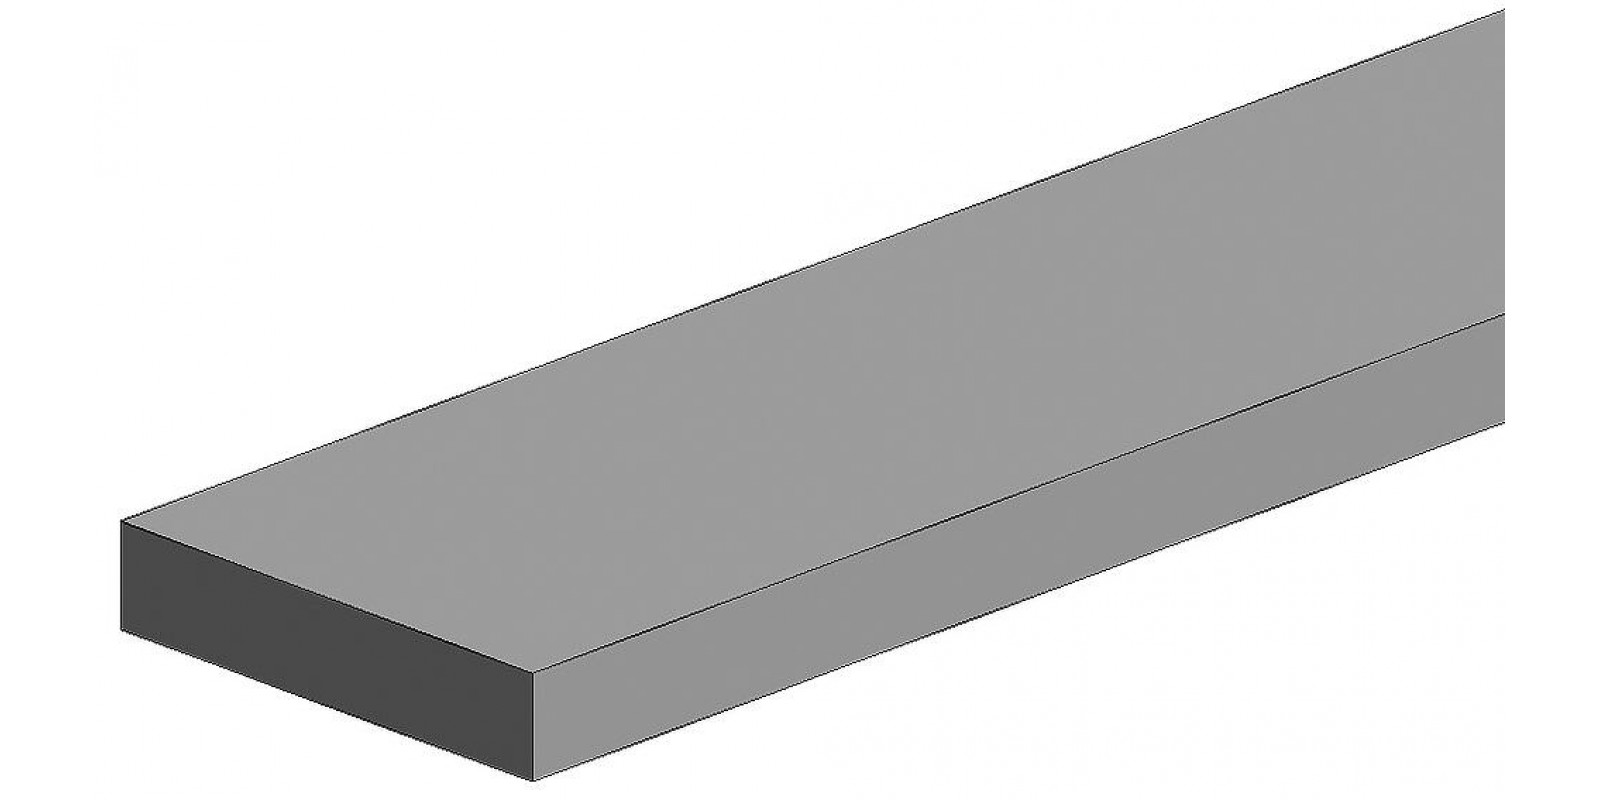 FA500111 White polystyrene square profile